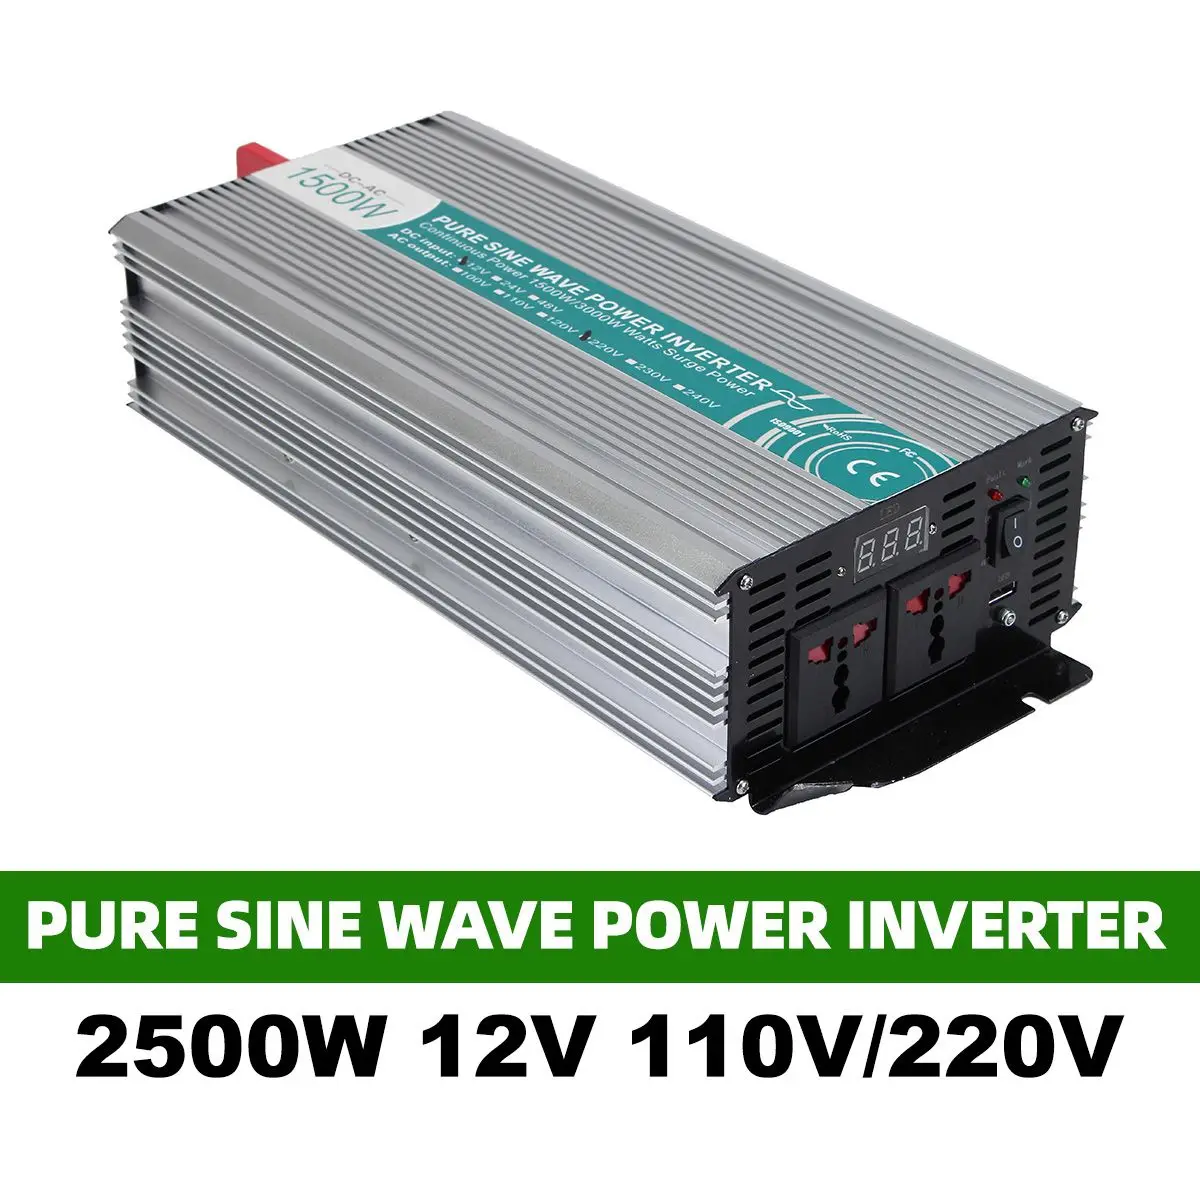 

Pure Sine Wave Inverter DC 12V To AC 110V/220V 2500W Voltage Transformer Power Converter Solar Inverter With 2 Universal Socket